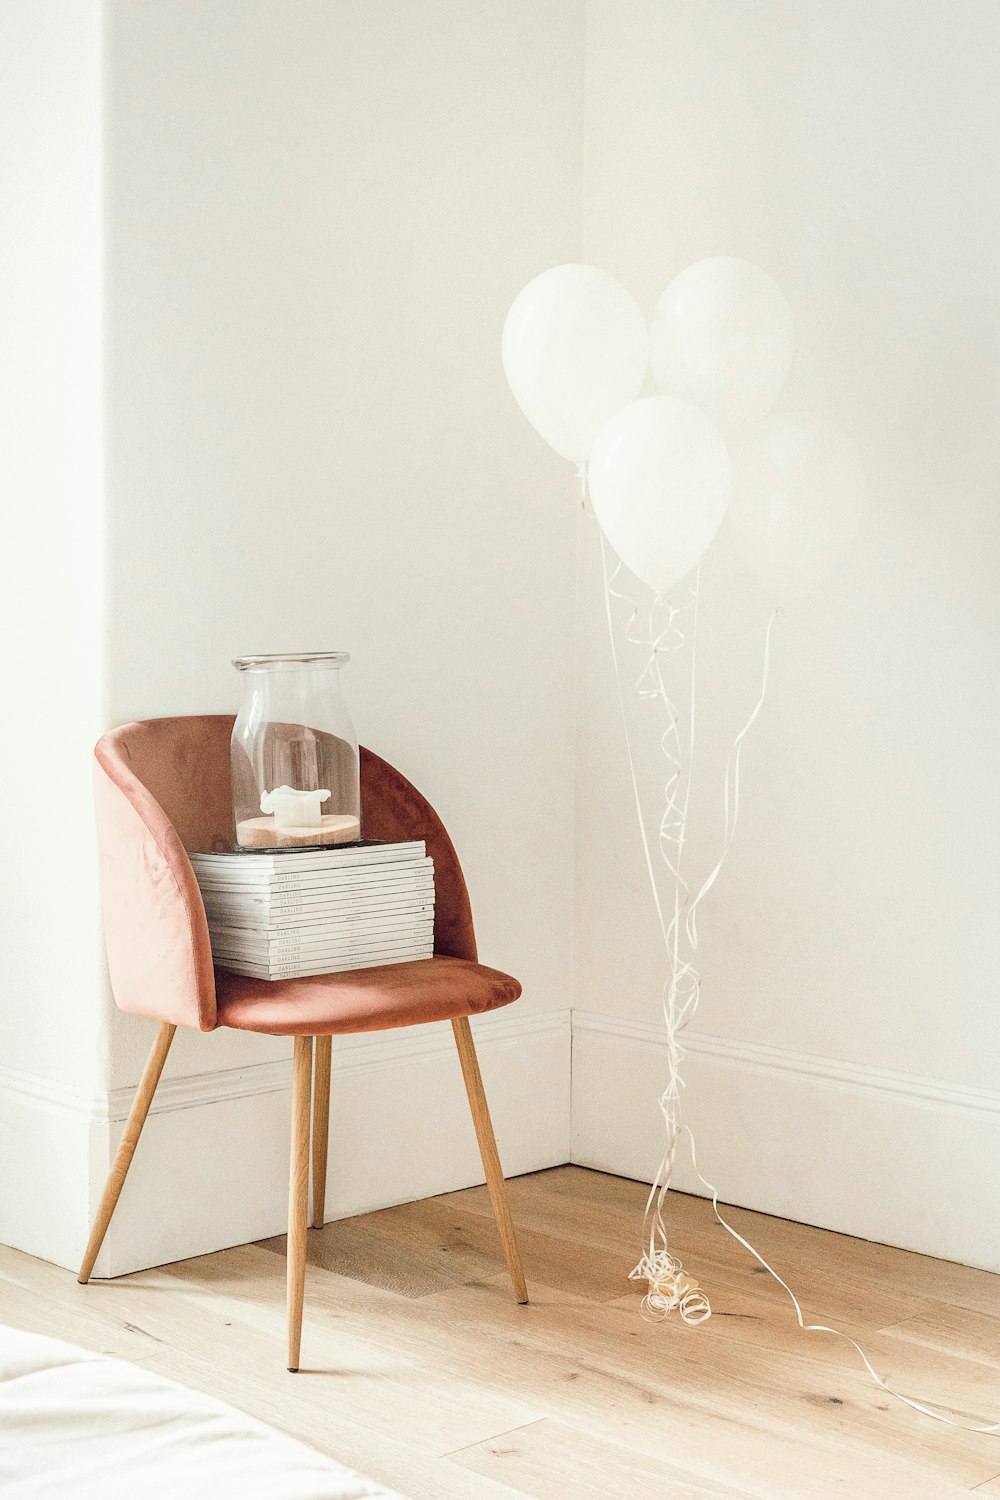 globos blancos al lado de un frasco en un libro y una silla